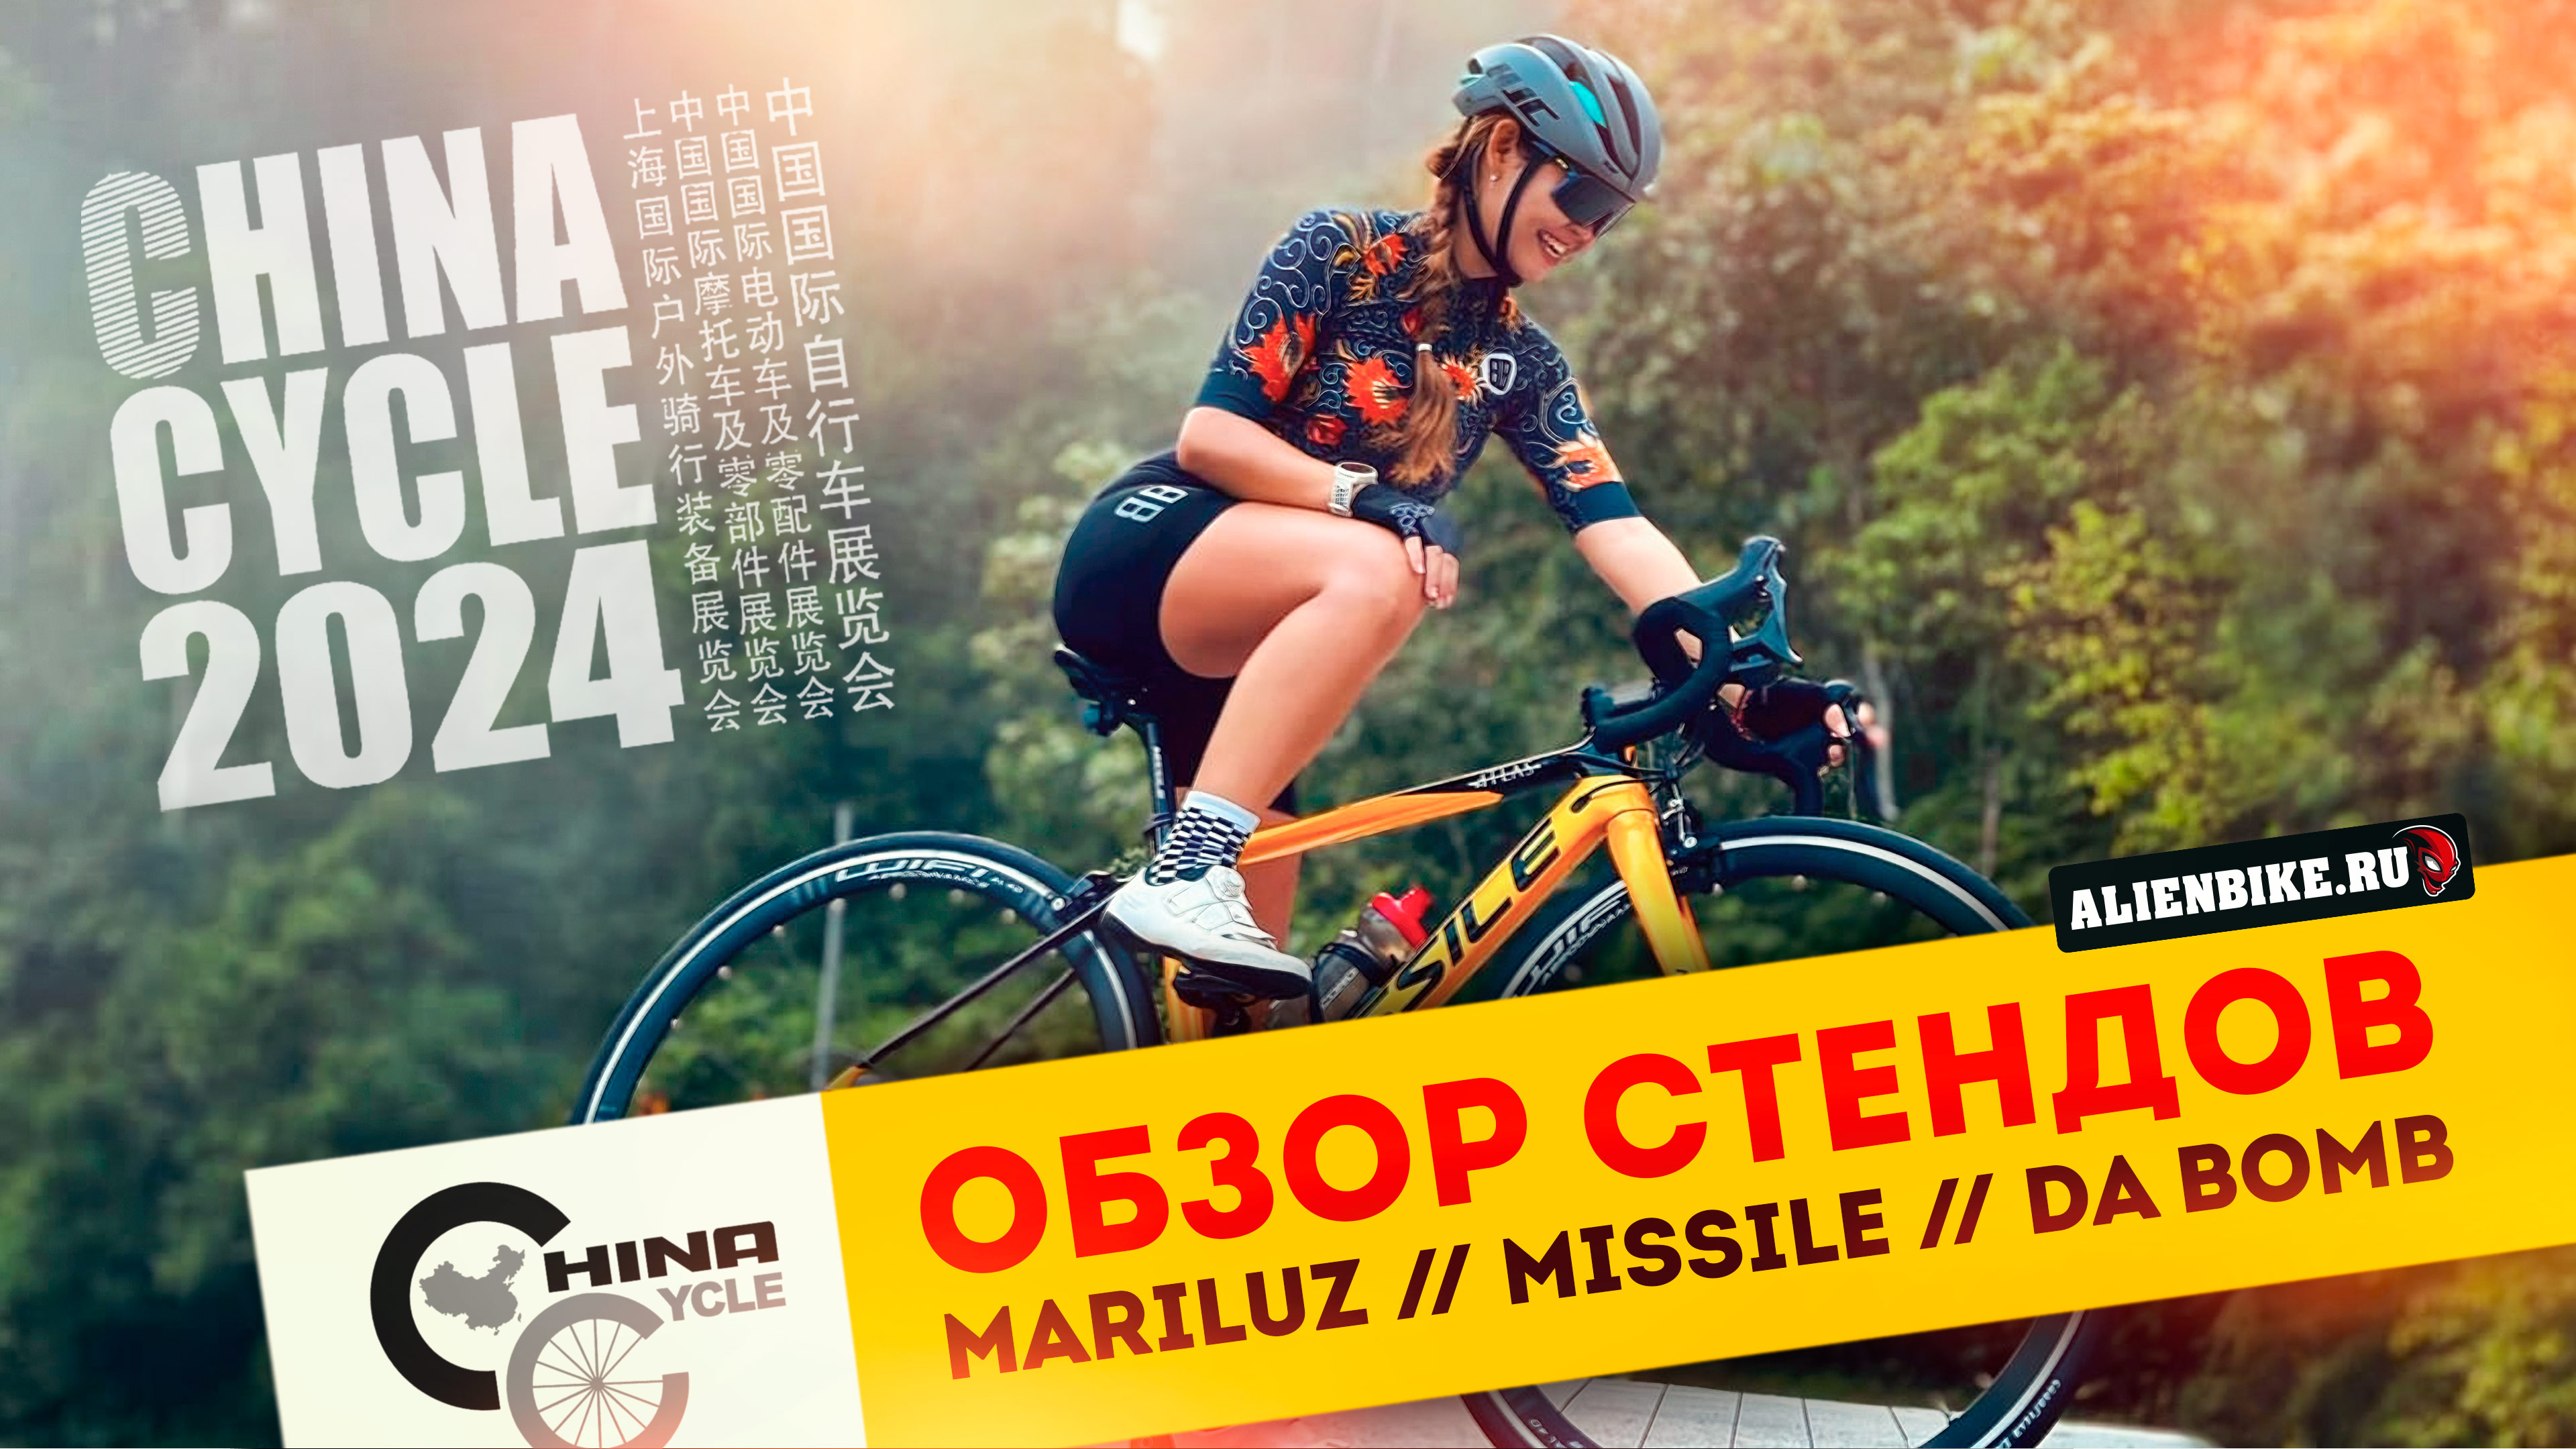 Велосипеды MARILUZ // MISSILE // DA BOMB | Интересные решения от ярких брендов | China Cycle 2024